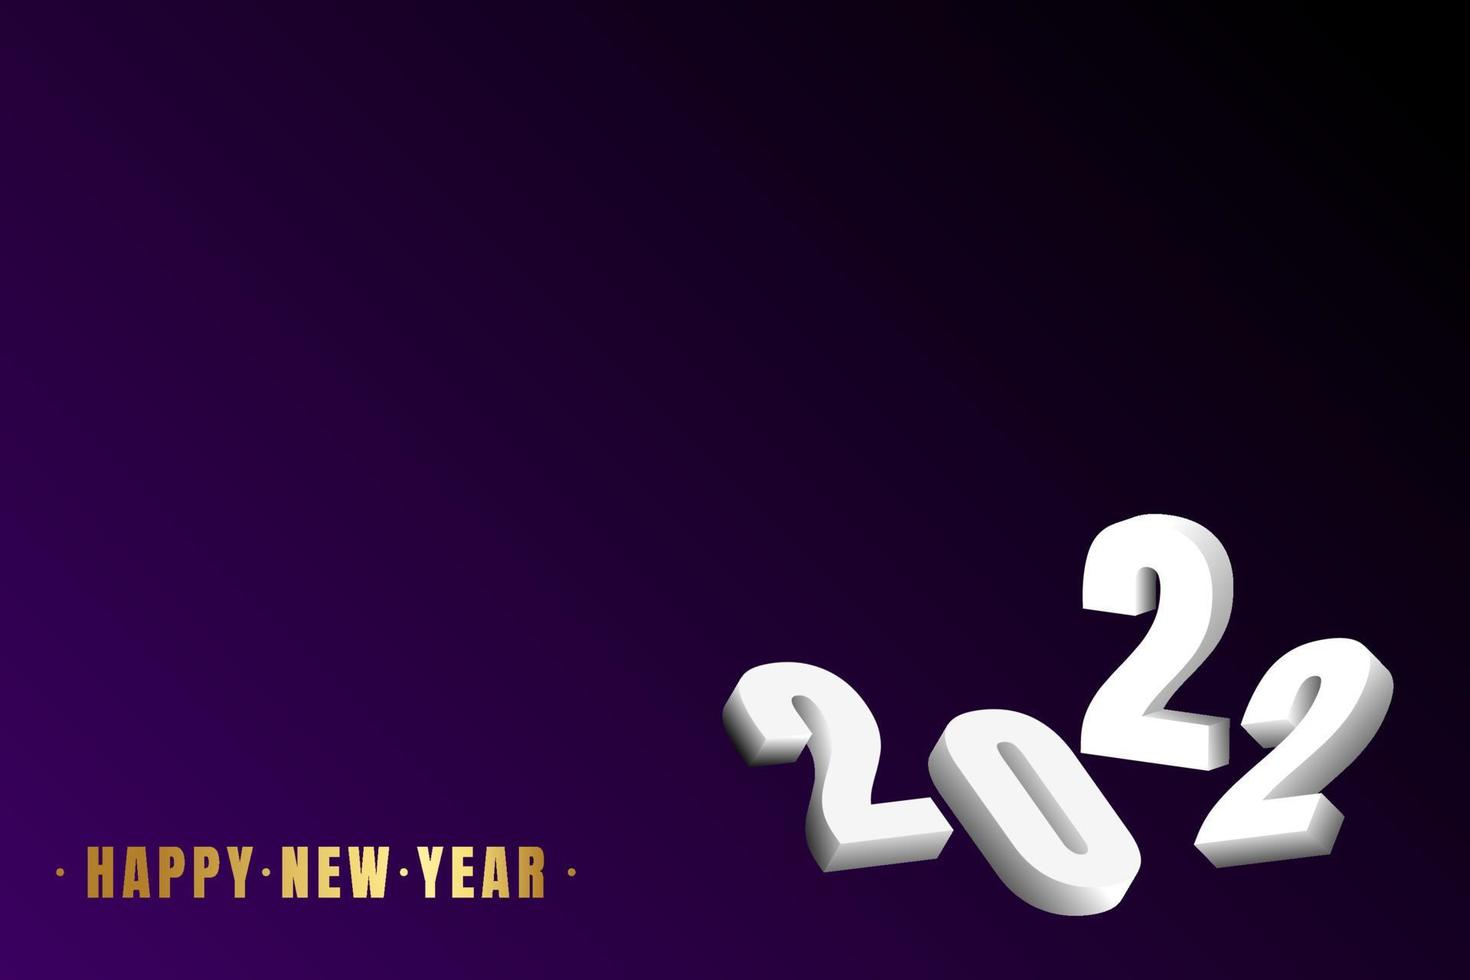 Happy New Year 2022 Black Violet vector